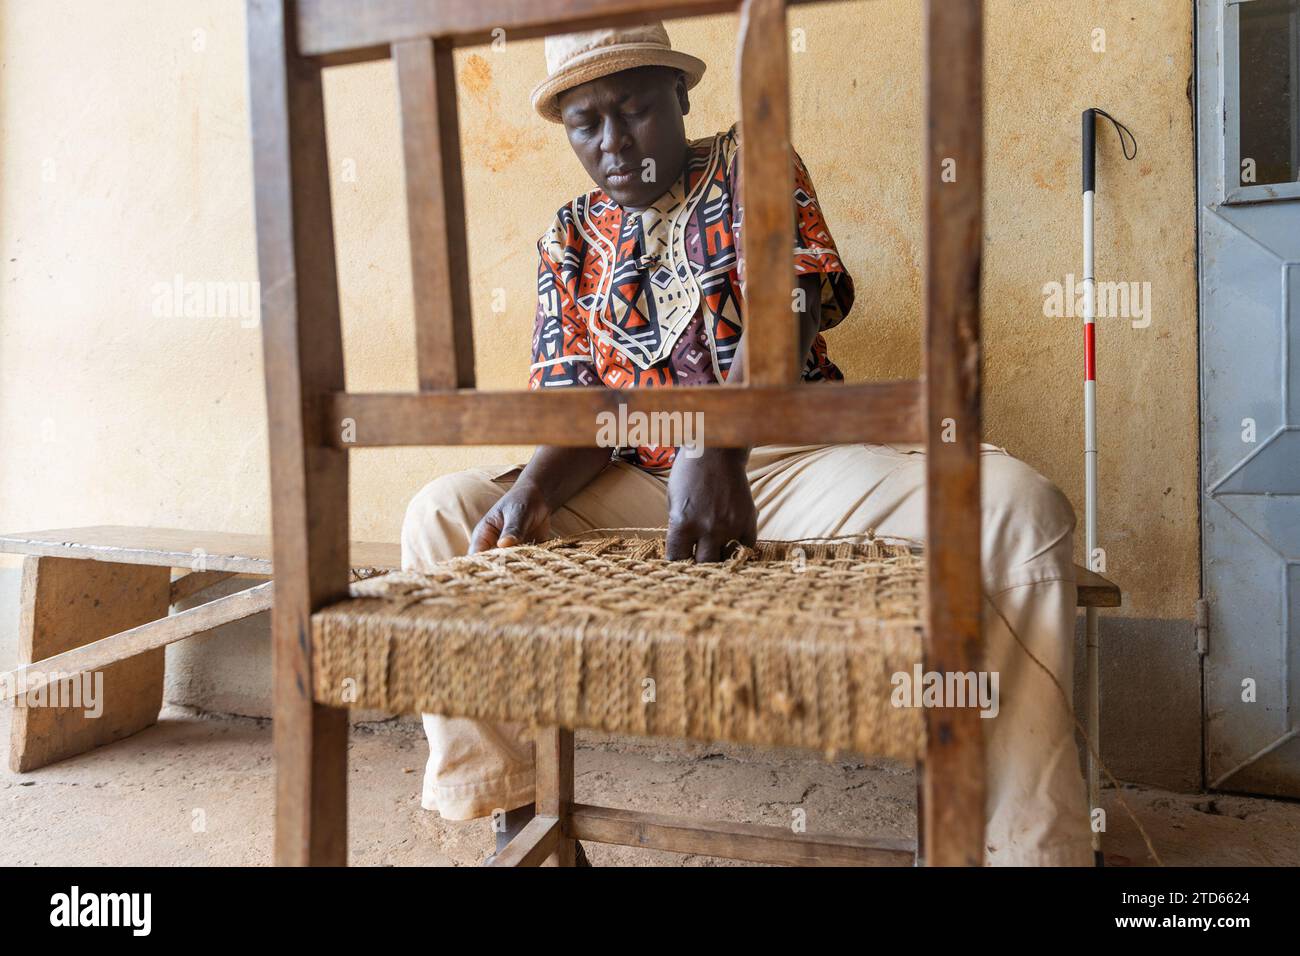 Lavoro di primo piano di tessitura di una sedia di legno da parte di un uomo africano cieco con cappello sulla testa. Foto Stock